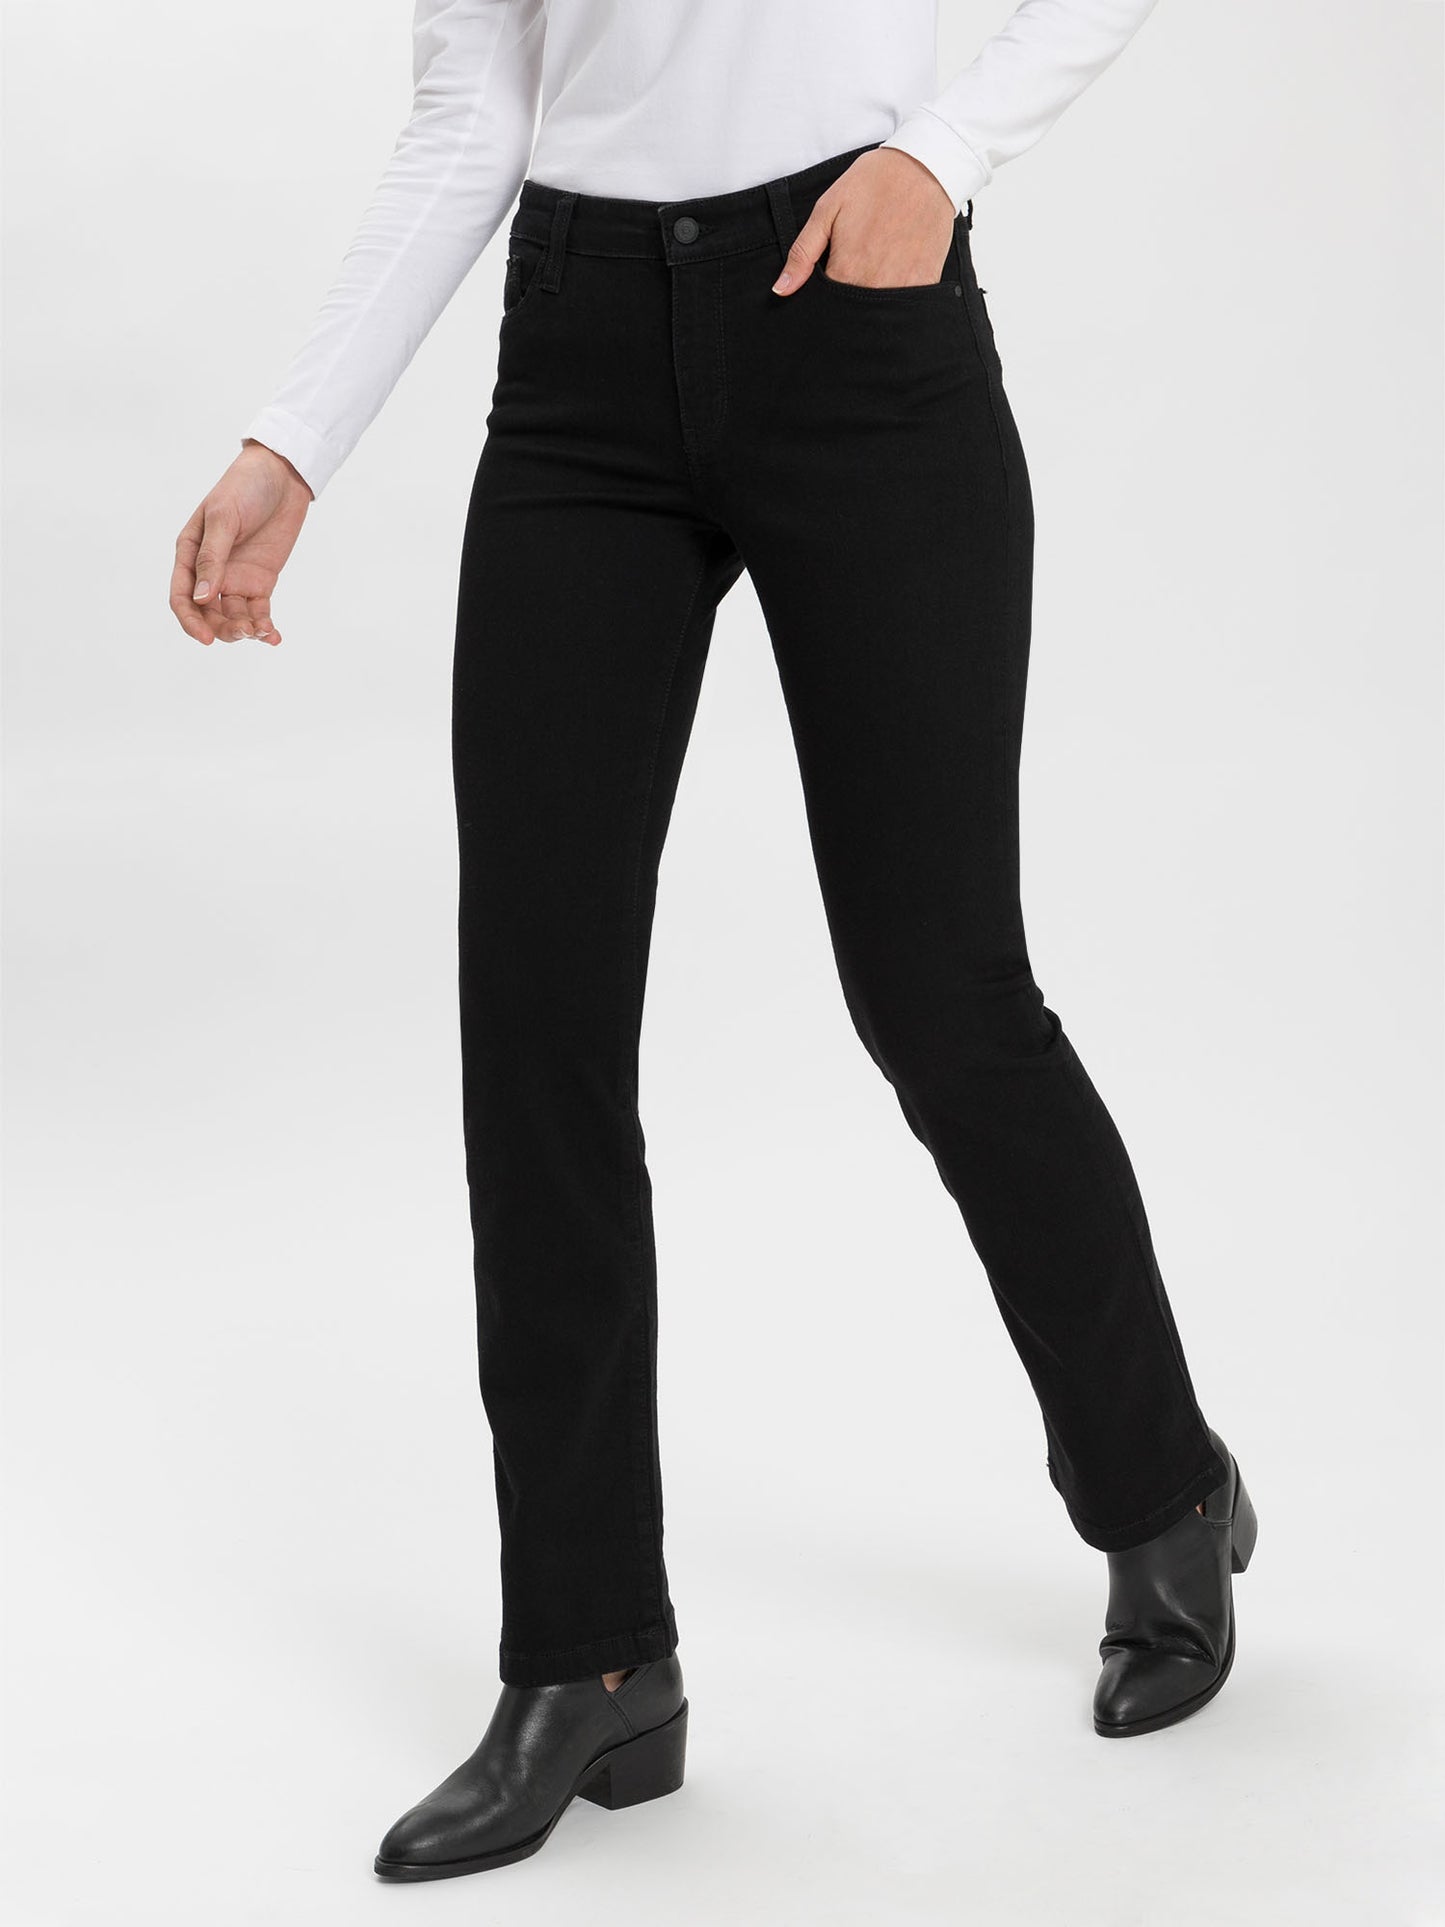 Lauren women's jeans regular fit high waist bootcut black